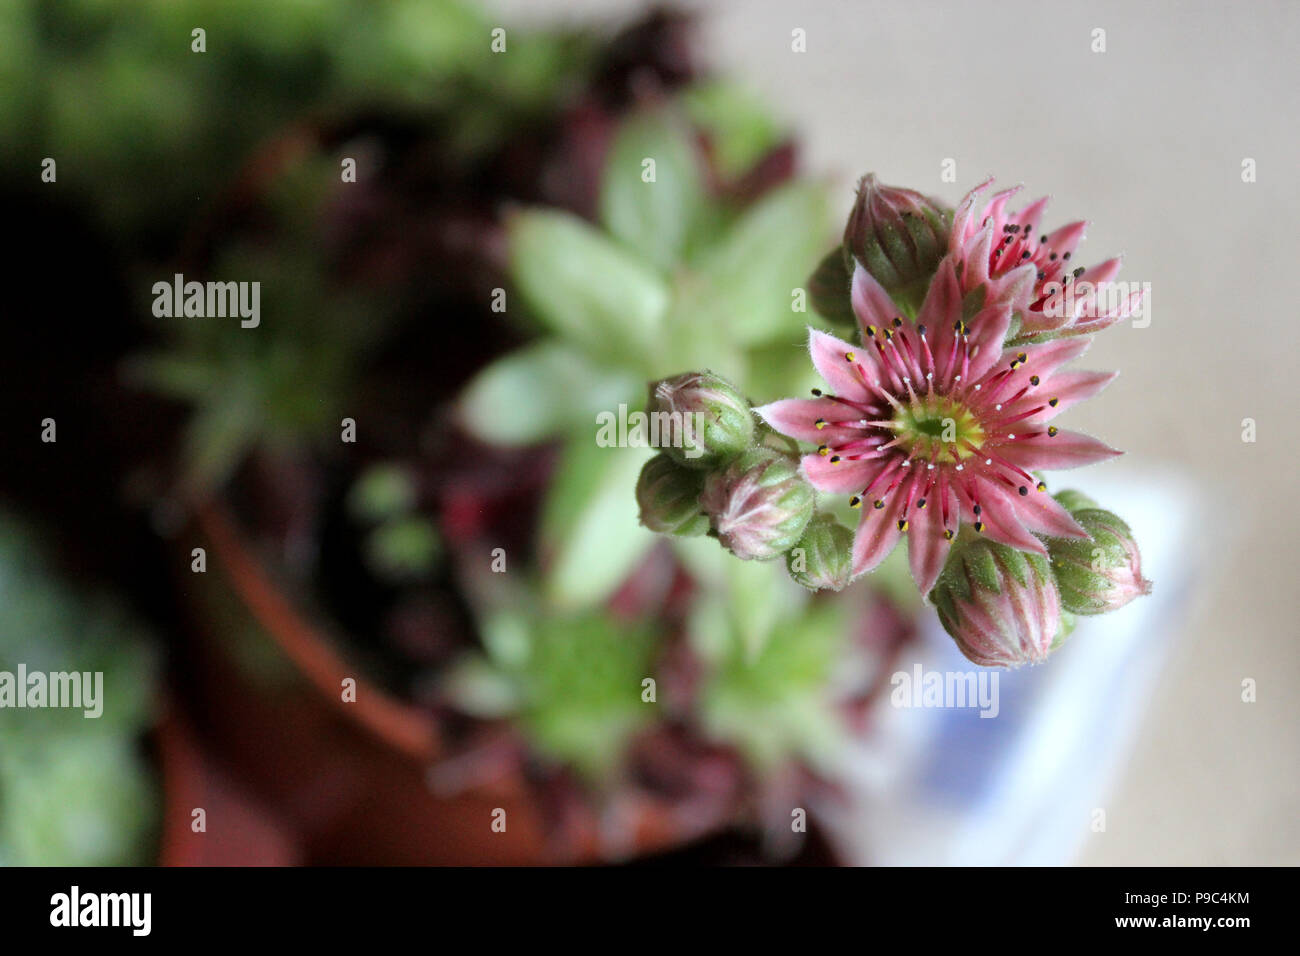 Sempervivum succulent flower Stock Photo